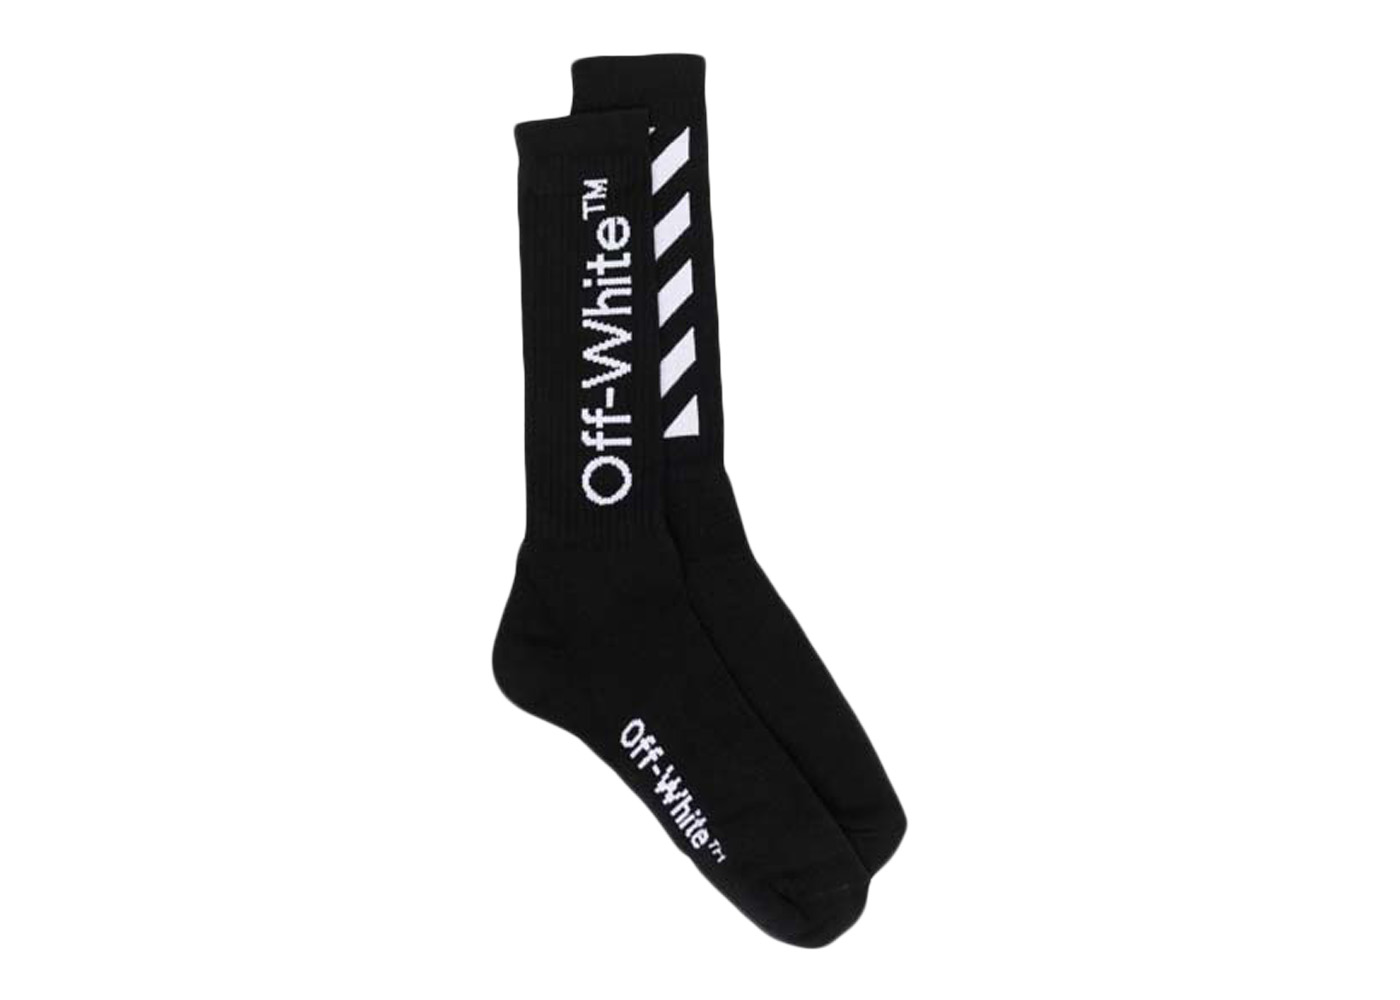 【格安新作登場】Off-White diag socks Black & White セット ソックス